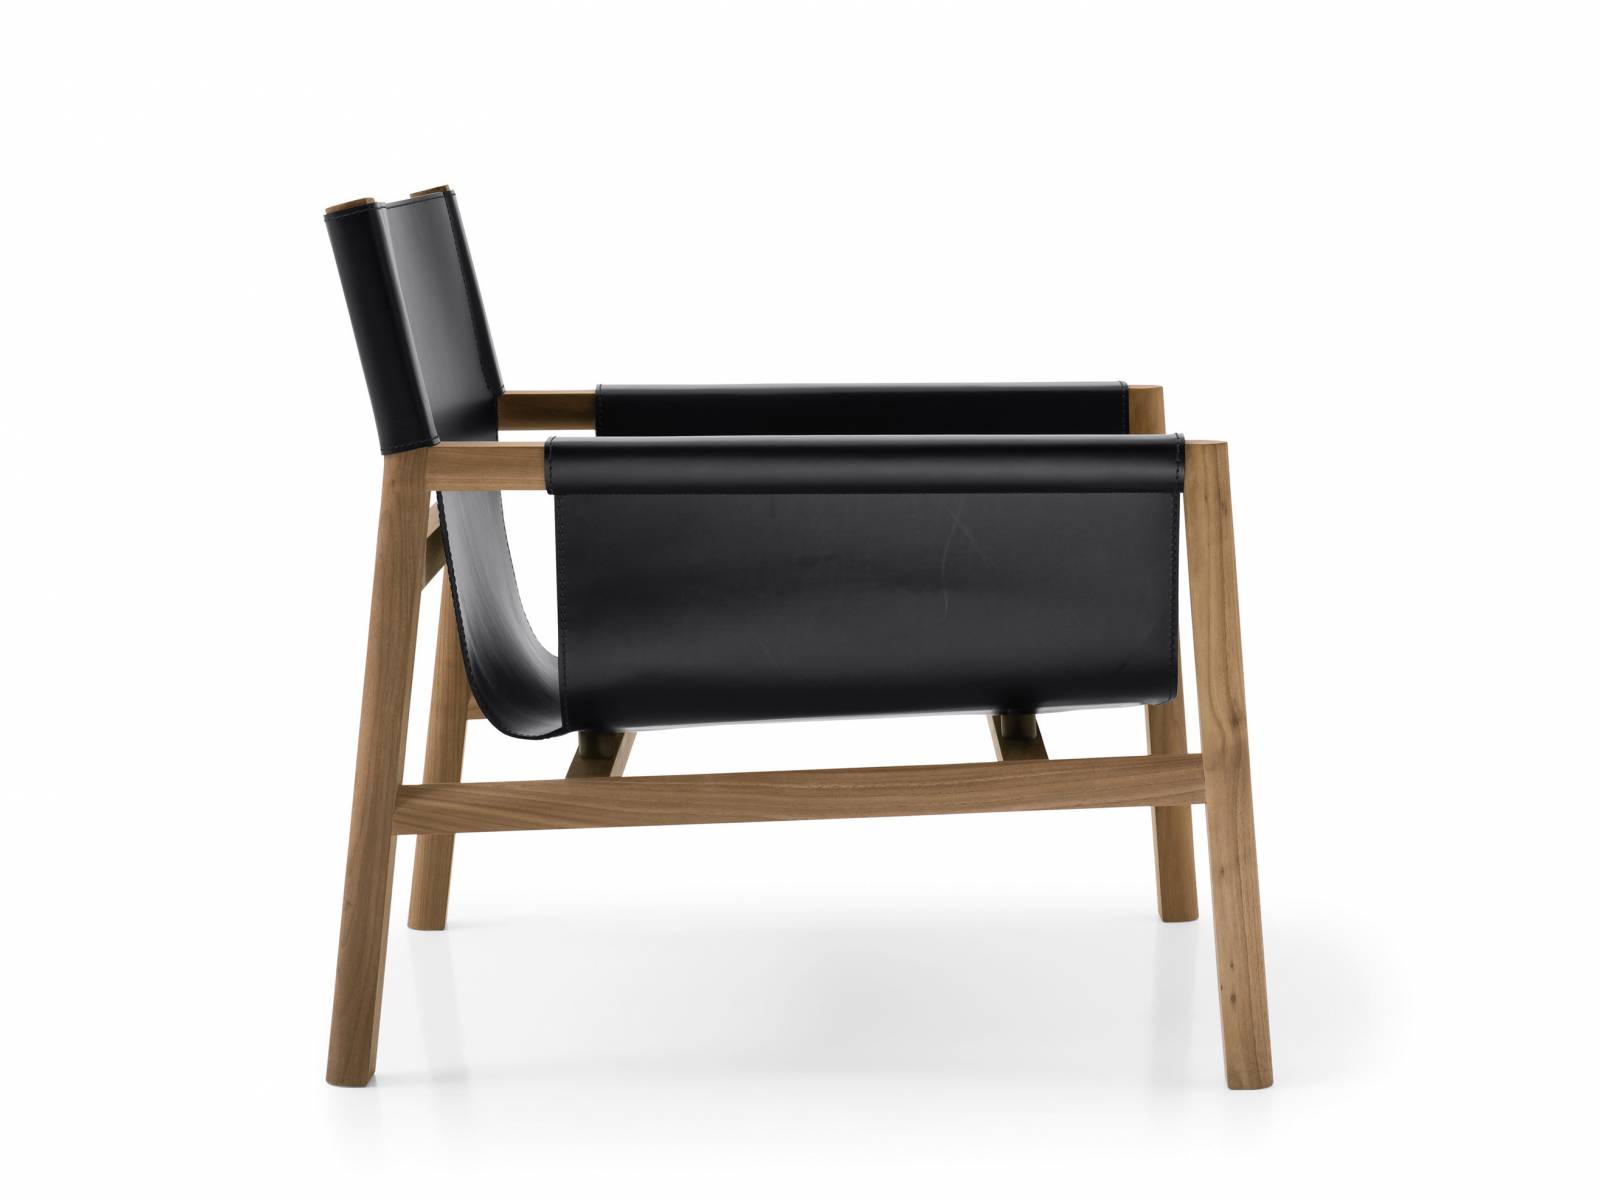 In «Pablo» sitzt man auf einer doppelten Lederschicht mit leichter Polsterung. Das macht den Stuhl sehr bequem, ohne das leichte, formschöne Holzgestell durch ein dickes Sitzpolster zu beschweren. Design: Vincent Van Duysen. B&B Italia.